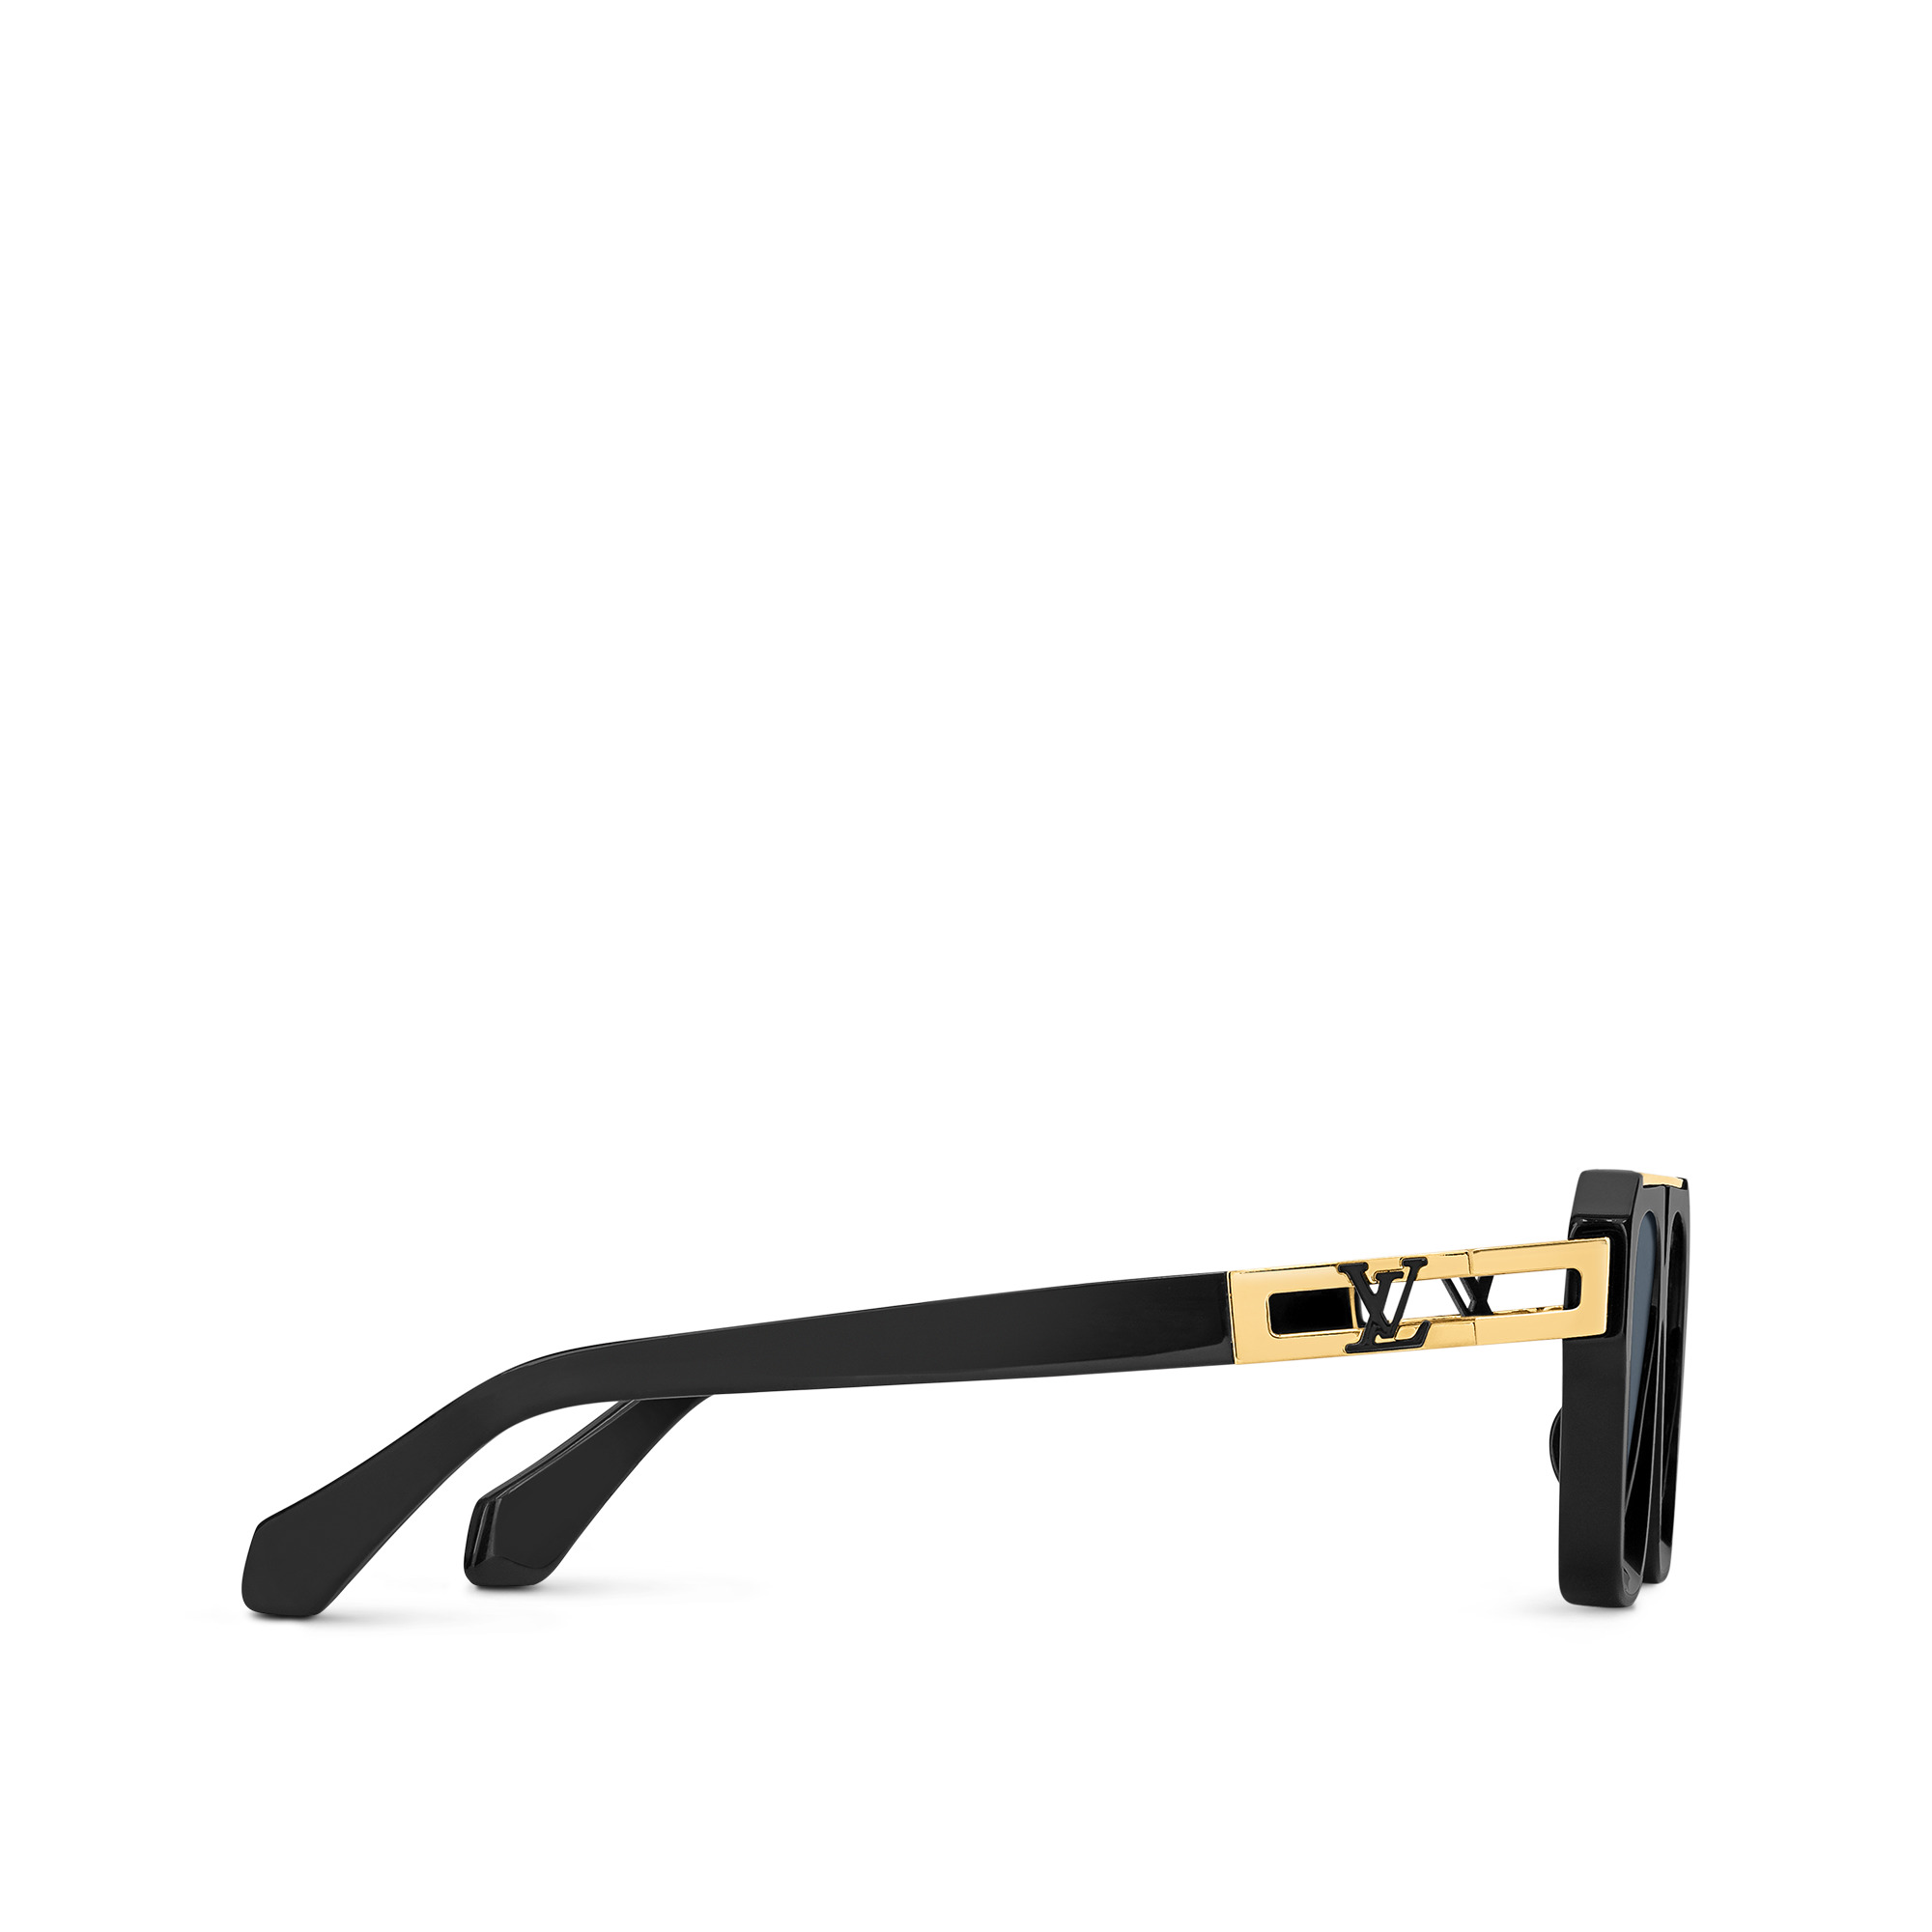 LV Escape Square Sunglasses - Accessories, LOUIS VUITTON